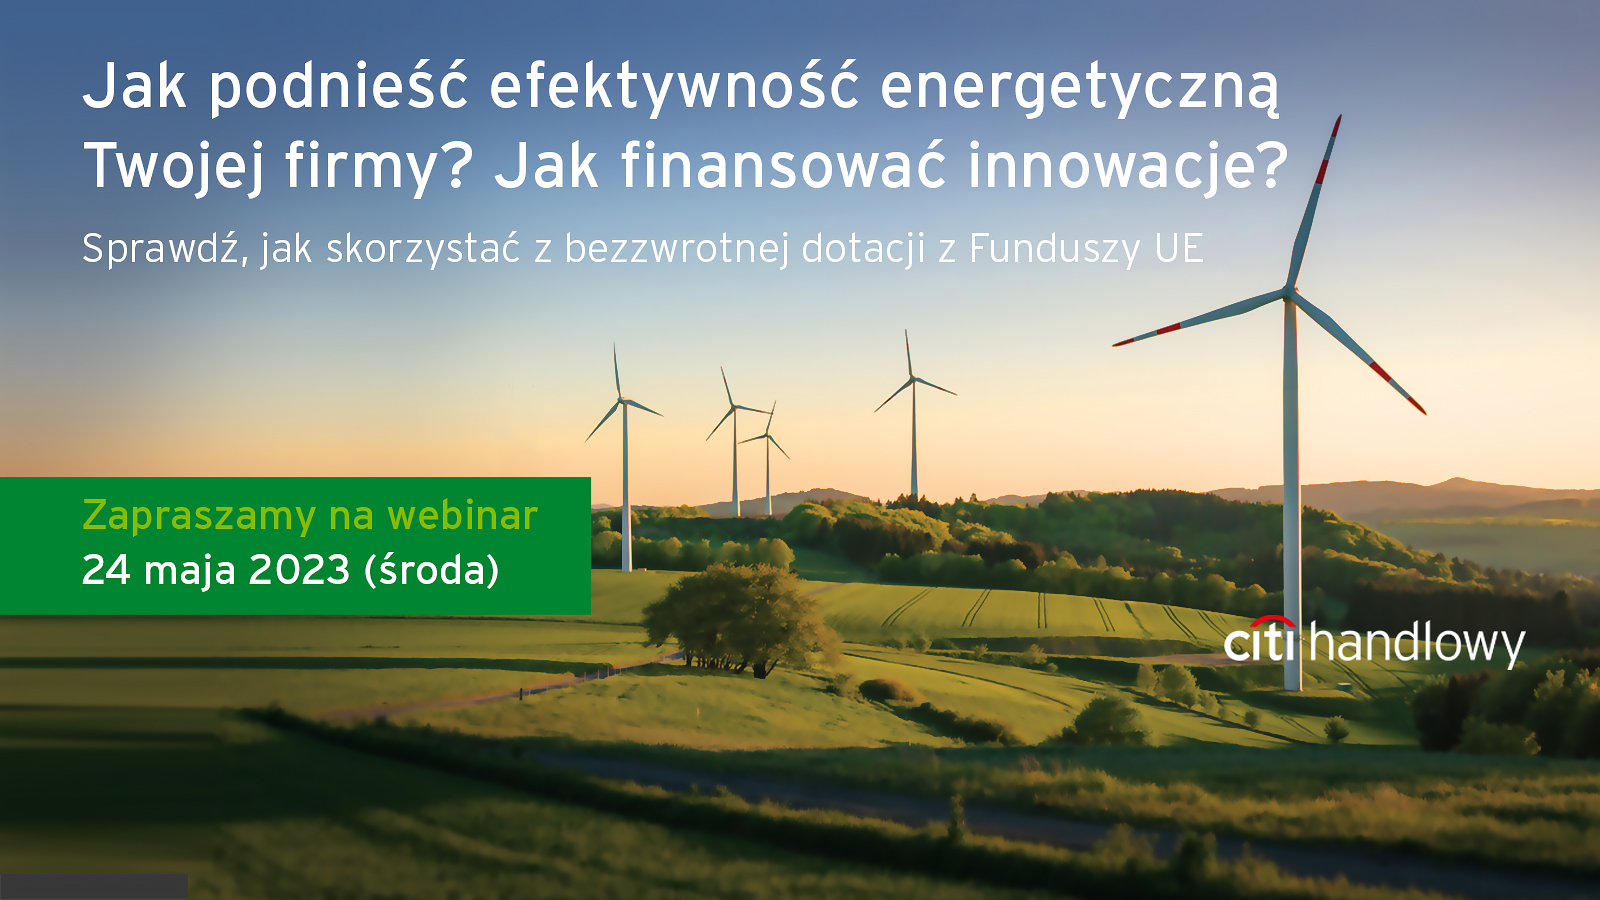 Jak podnieść efektywność energetyczną Twojej firmy? Jak finansować innowacje? Sprawdź, jak skorzystać z dotacji z funduszy UE. Zapraszamy na webinar z ekspertami Citi Handlowy – 24 maja